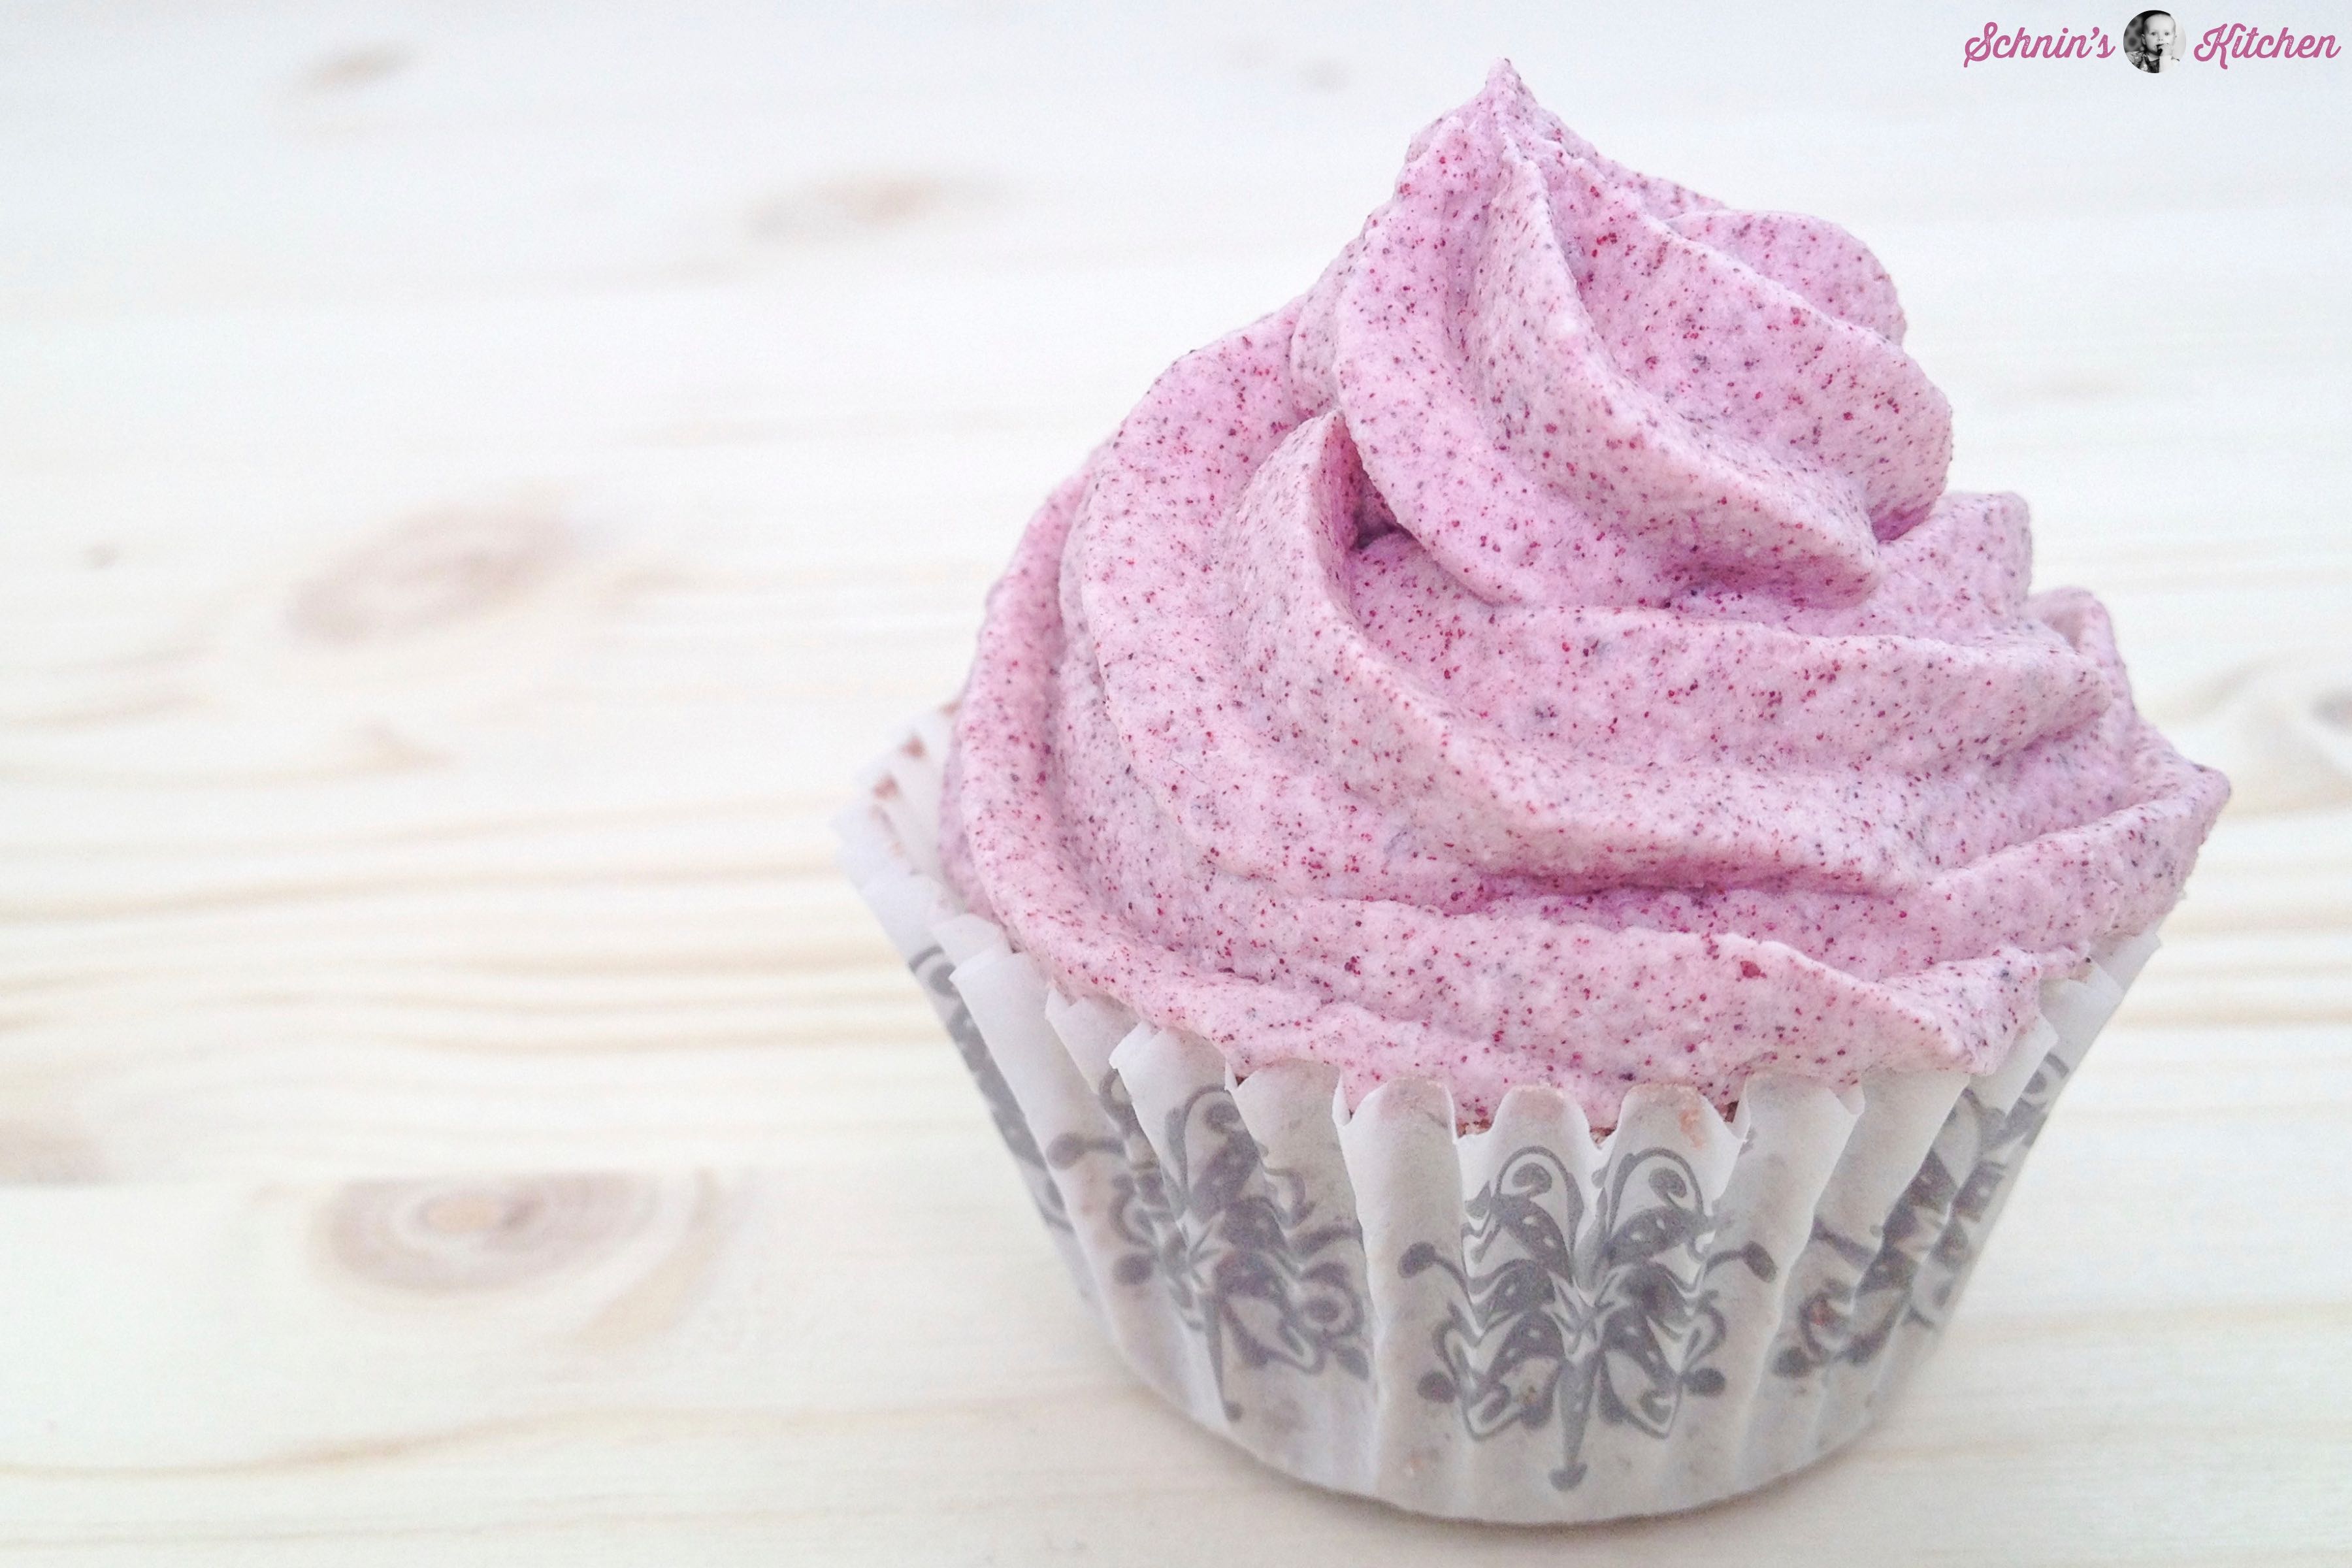 Bade cupcakes - Die hochwertigsten Bade cupcakes ausführlich analysiert